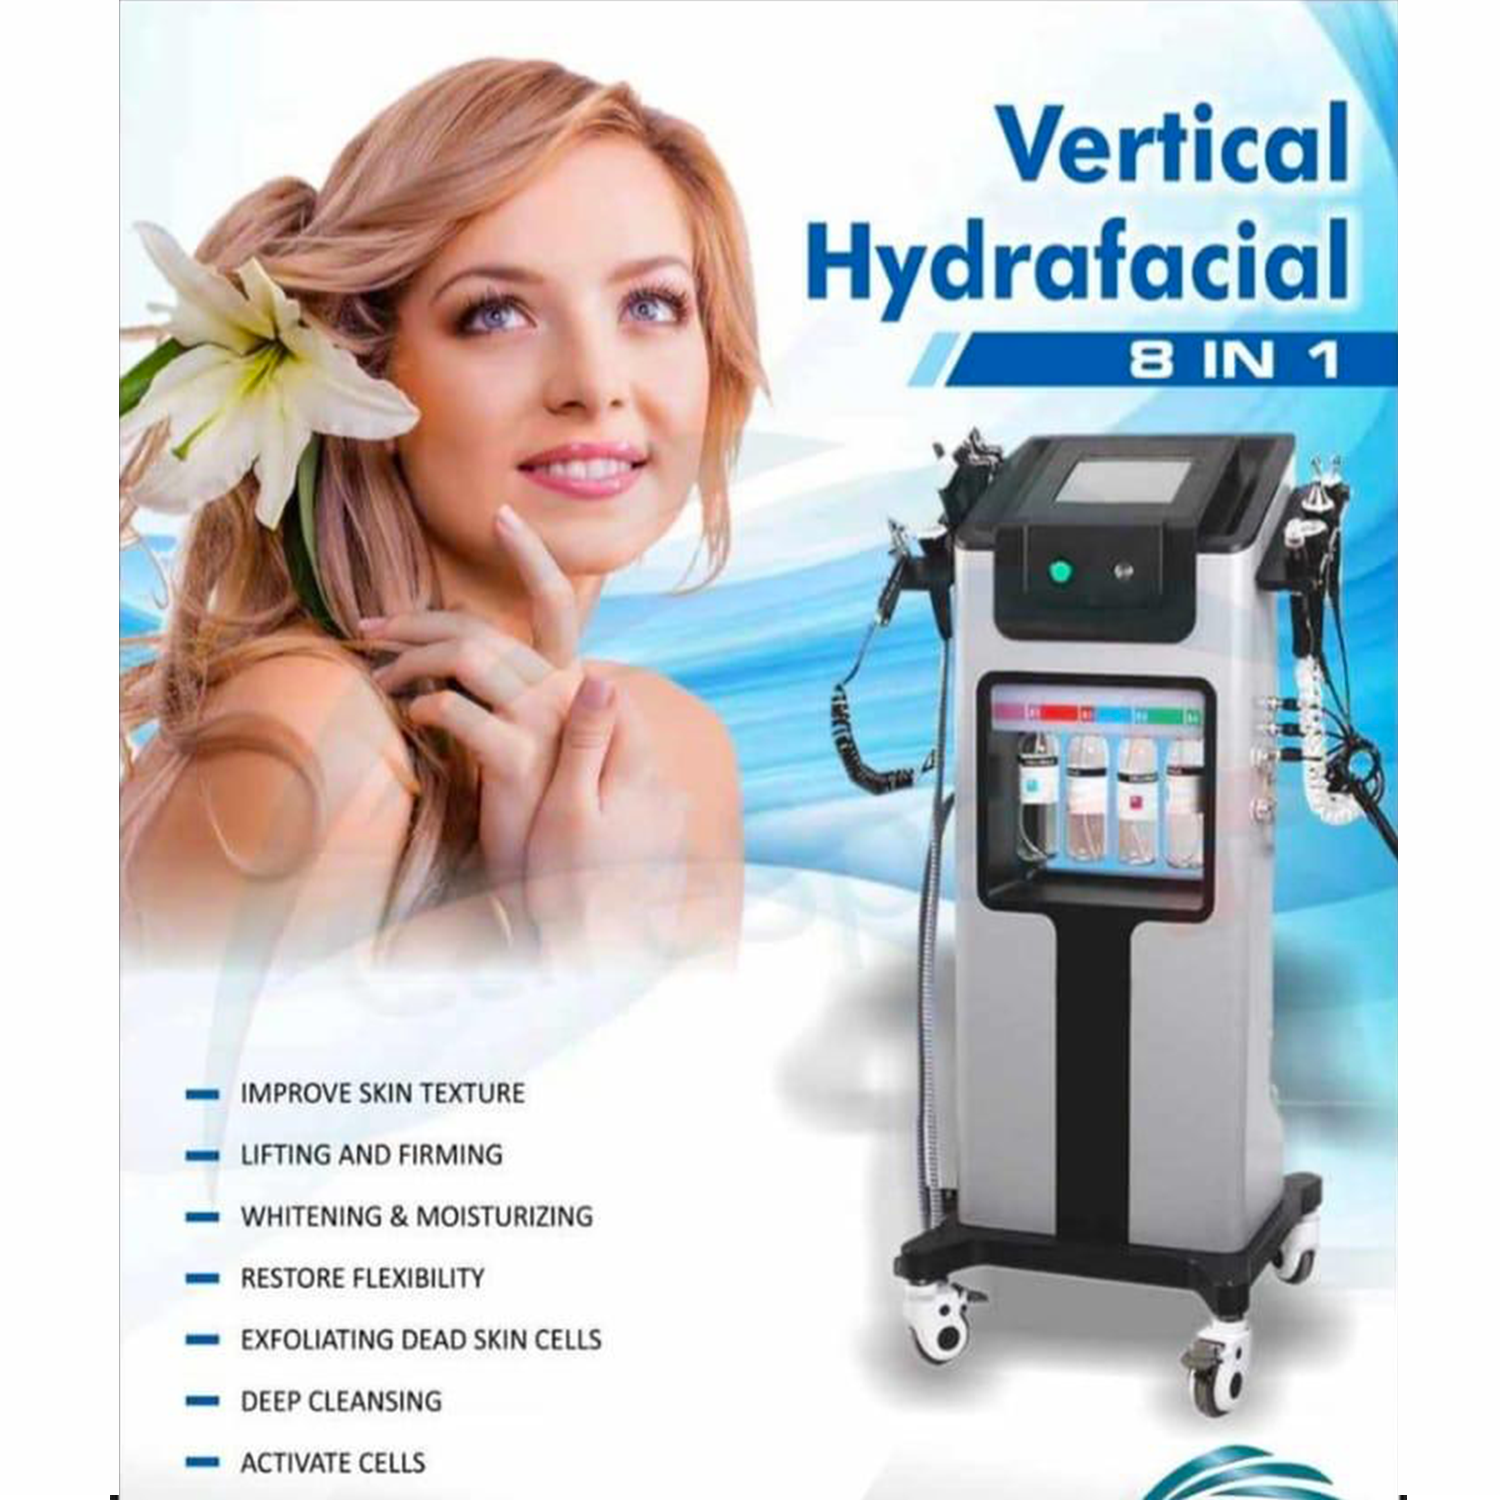 8 In 1 Vertical Hydra Facial Machine